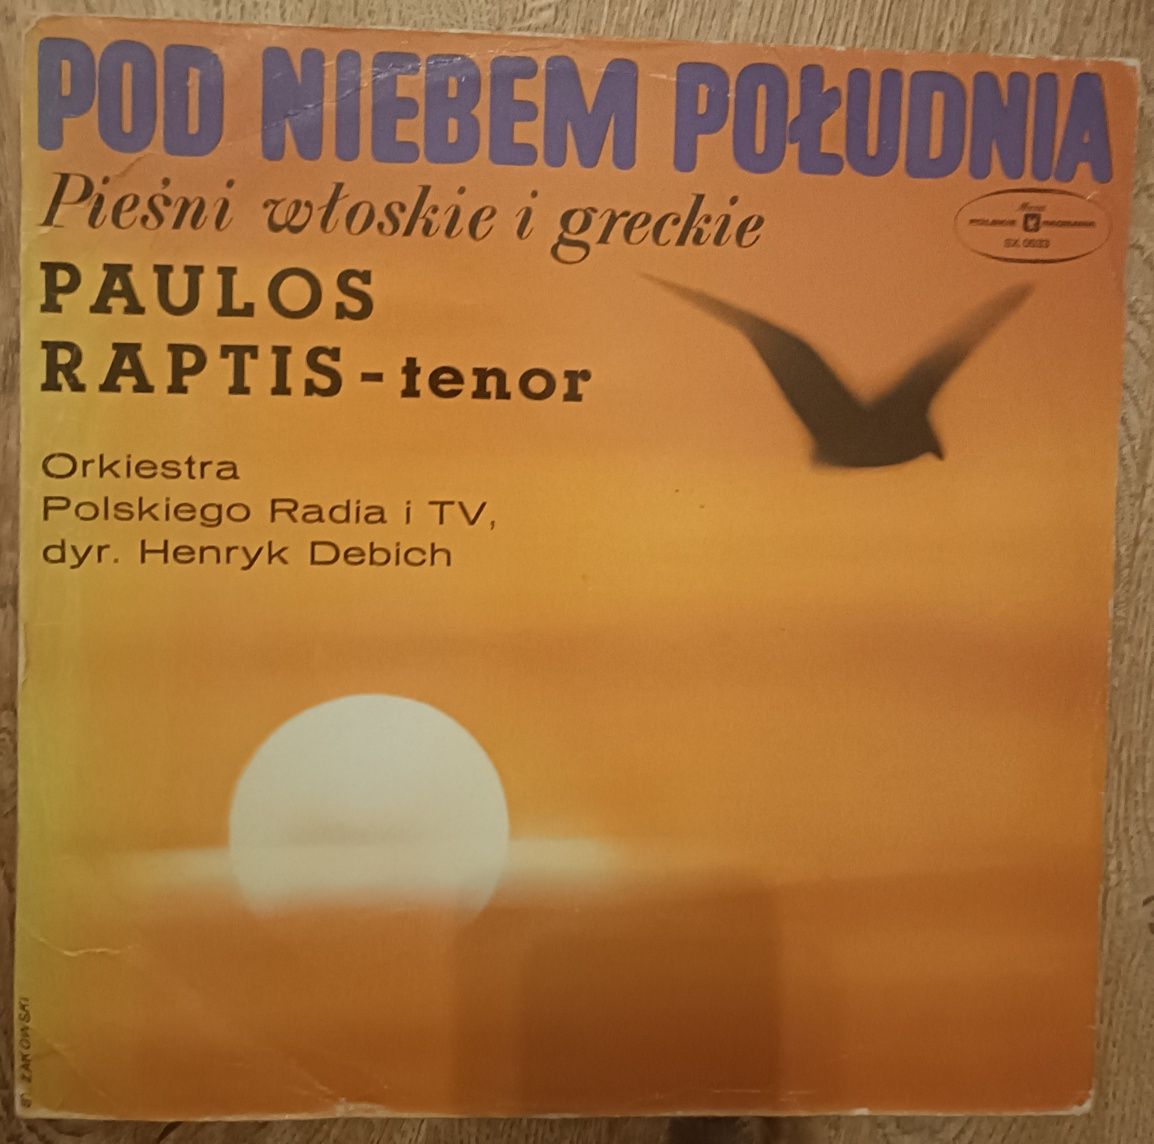 Pod niebem południa pieśni włoskie i greckie wykonuje Paulos Raptis